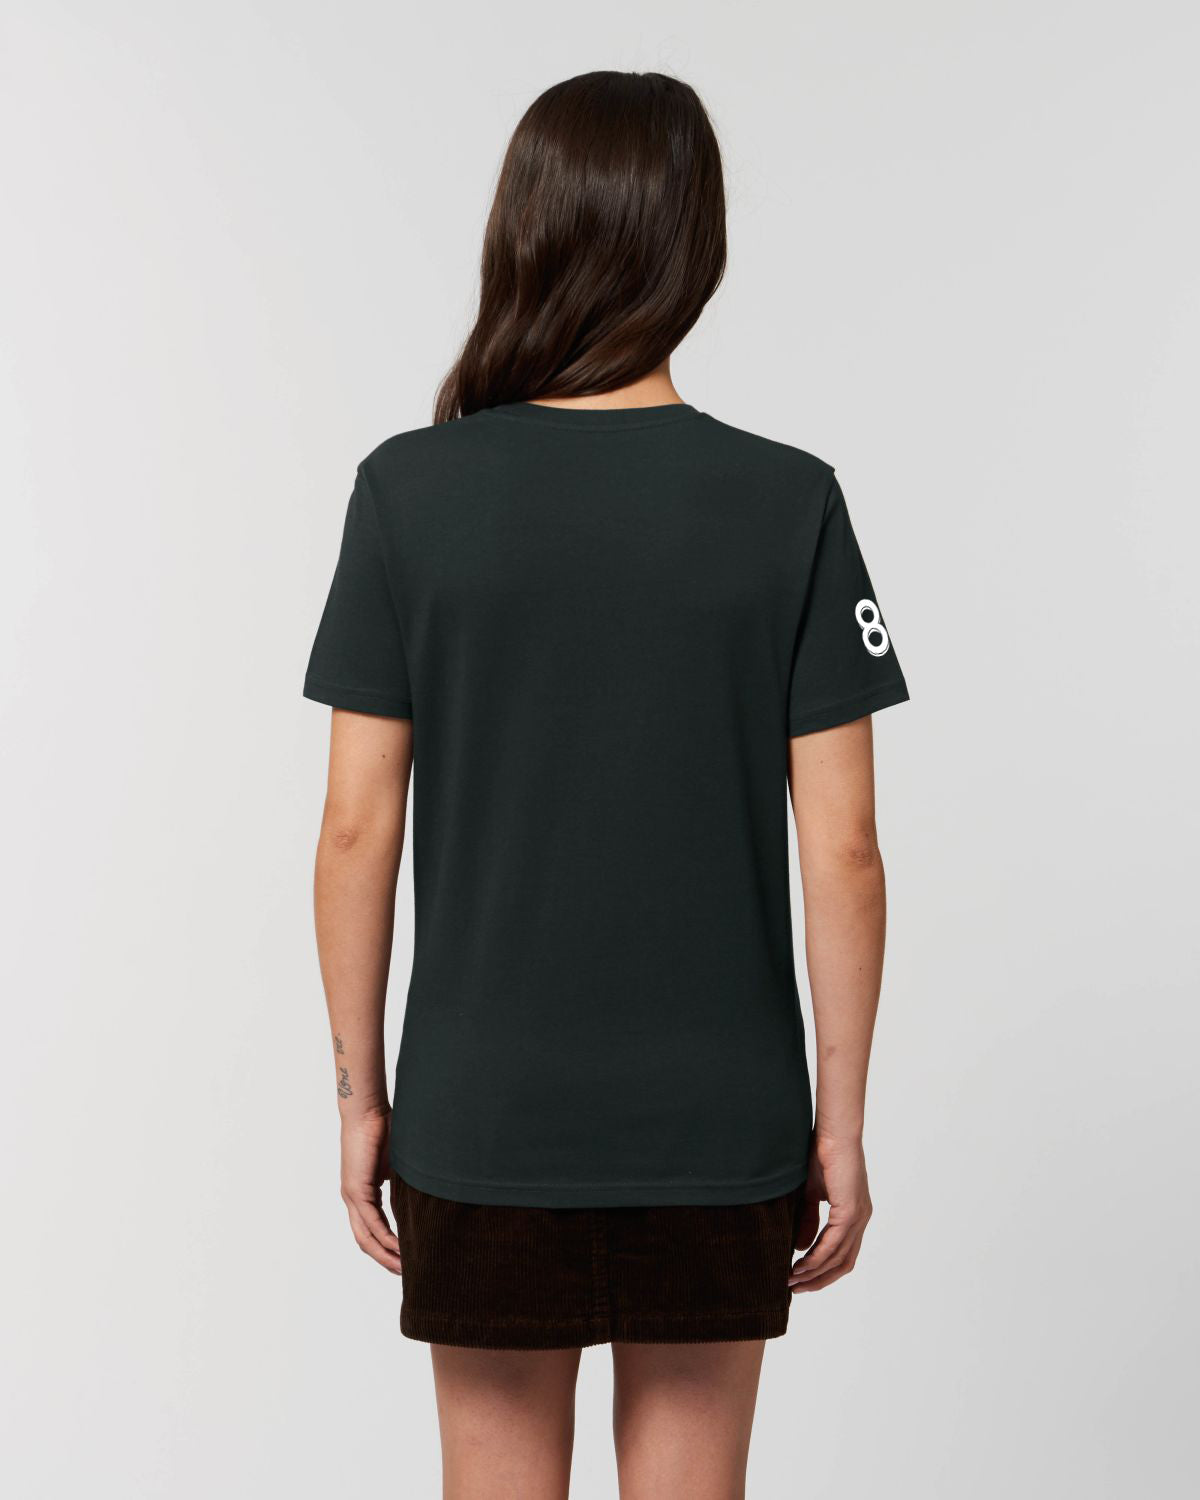 T-Shirt FC Le Mont - Femme